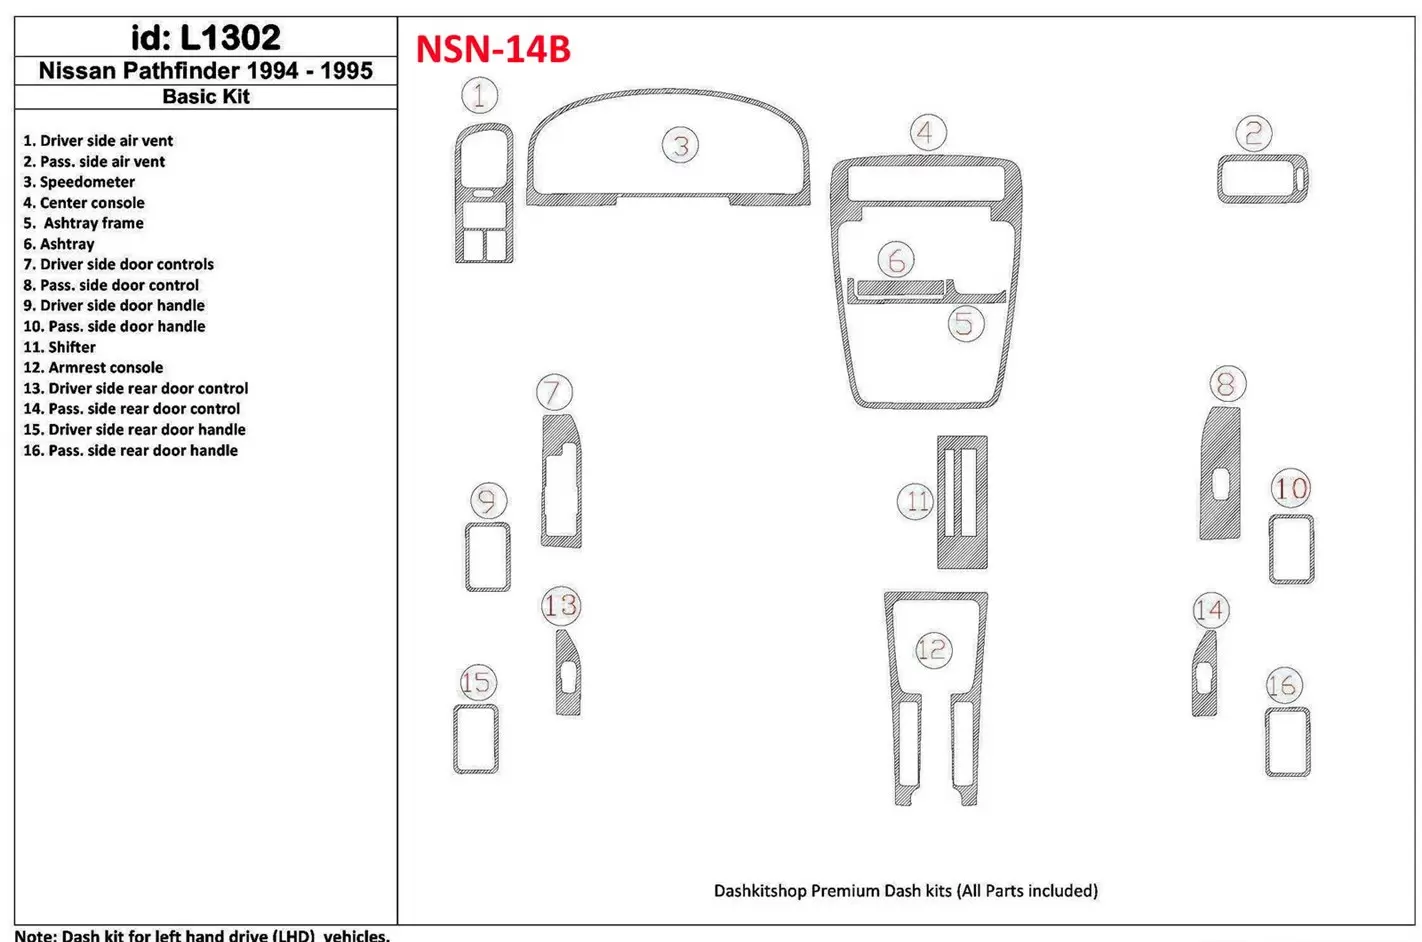 Nissan Pathfinder 1994-1995 Paquet de base, 16 Parts set BD Kit la décoration du tableau de bord - 1 - habillage decor de tablea